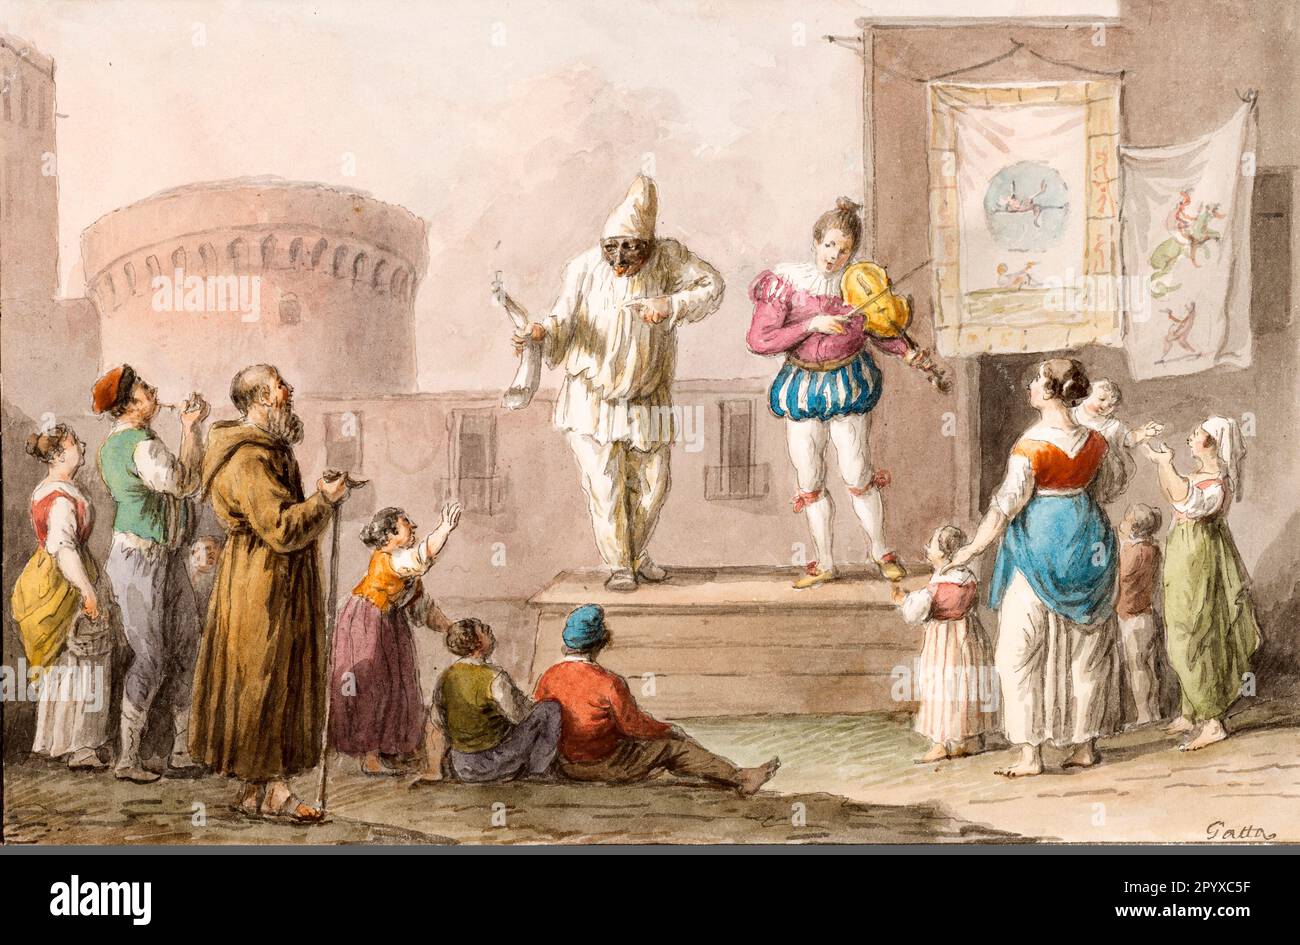 Italy Campania Naples - Performers of a Commedia dell'Arte by Saverio della Gatta in 1827 Stock Photo